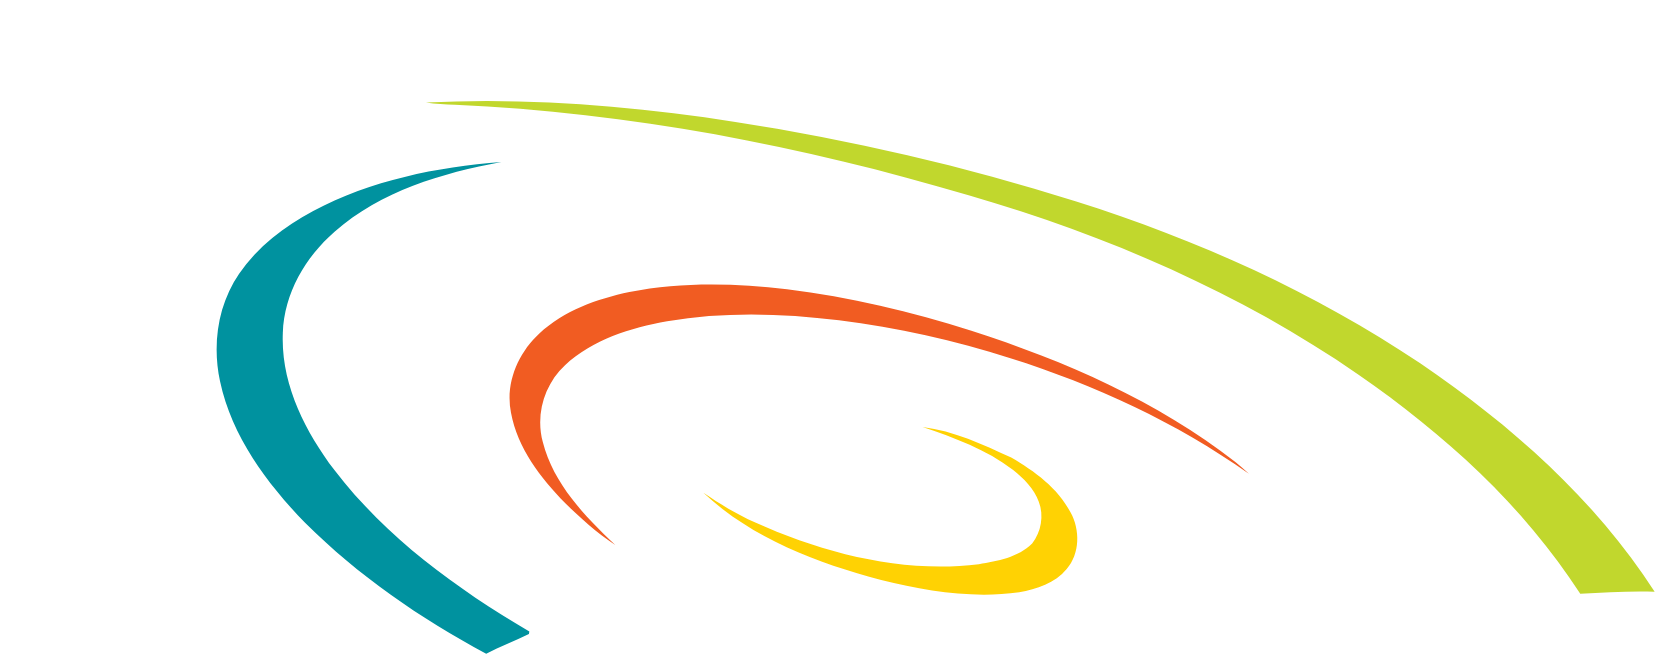 Concentrix logo for dark backgrounds (transparent PNG)